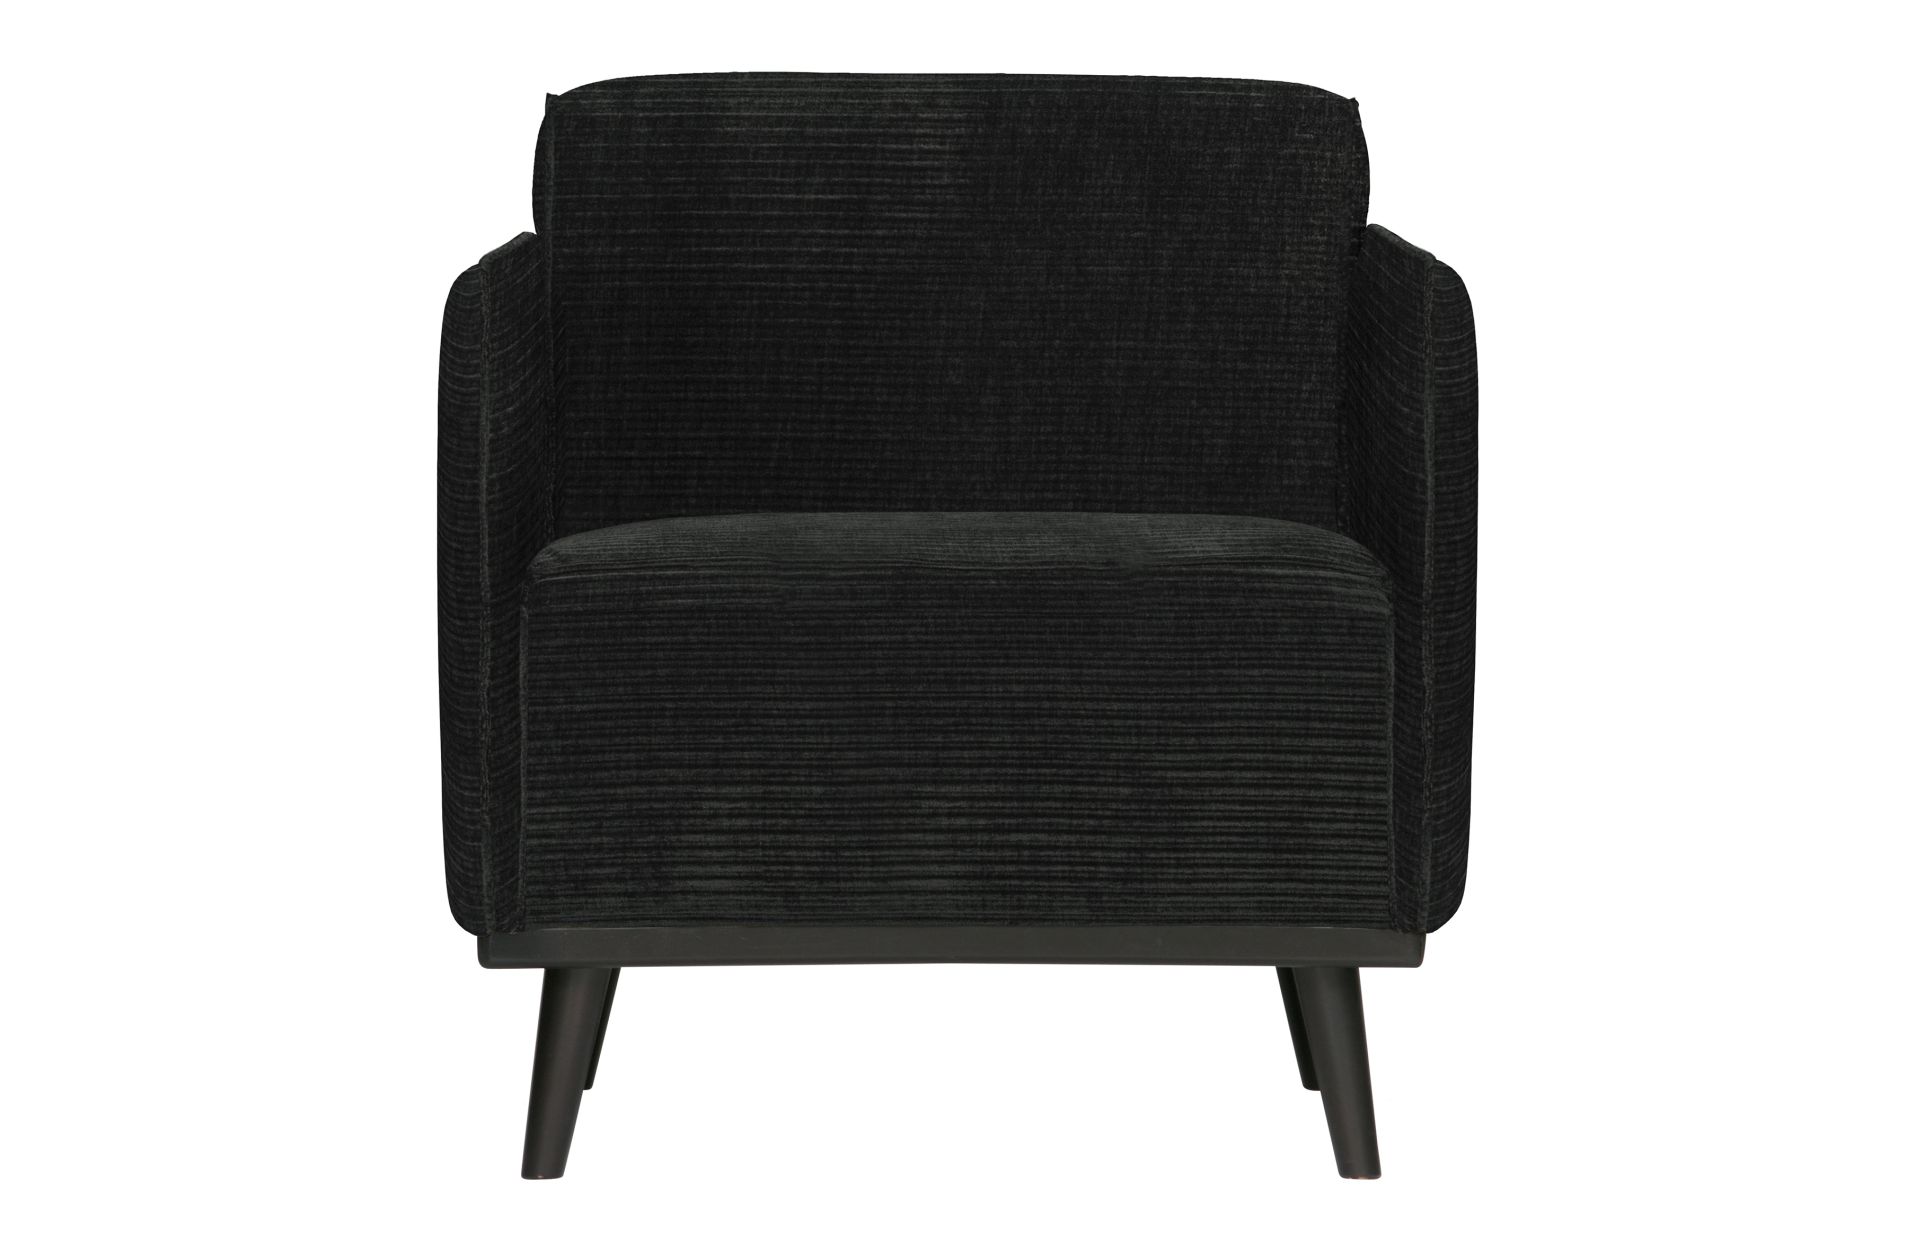 Der Sessel Statement überzeugt mit seinem modernen Design. Gefertigt wurde er aus gewebten Jacquard, welches einen Graphit Farbton besitzen. Das Gestell ist aus Birkenholz und hat eine schwarze Farbe. Der Hocker hat eine Sitzhöhe von 46 cm.